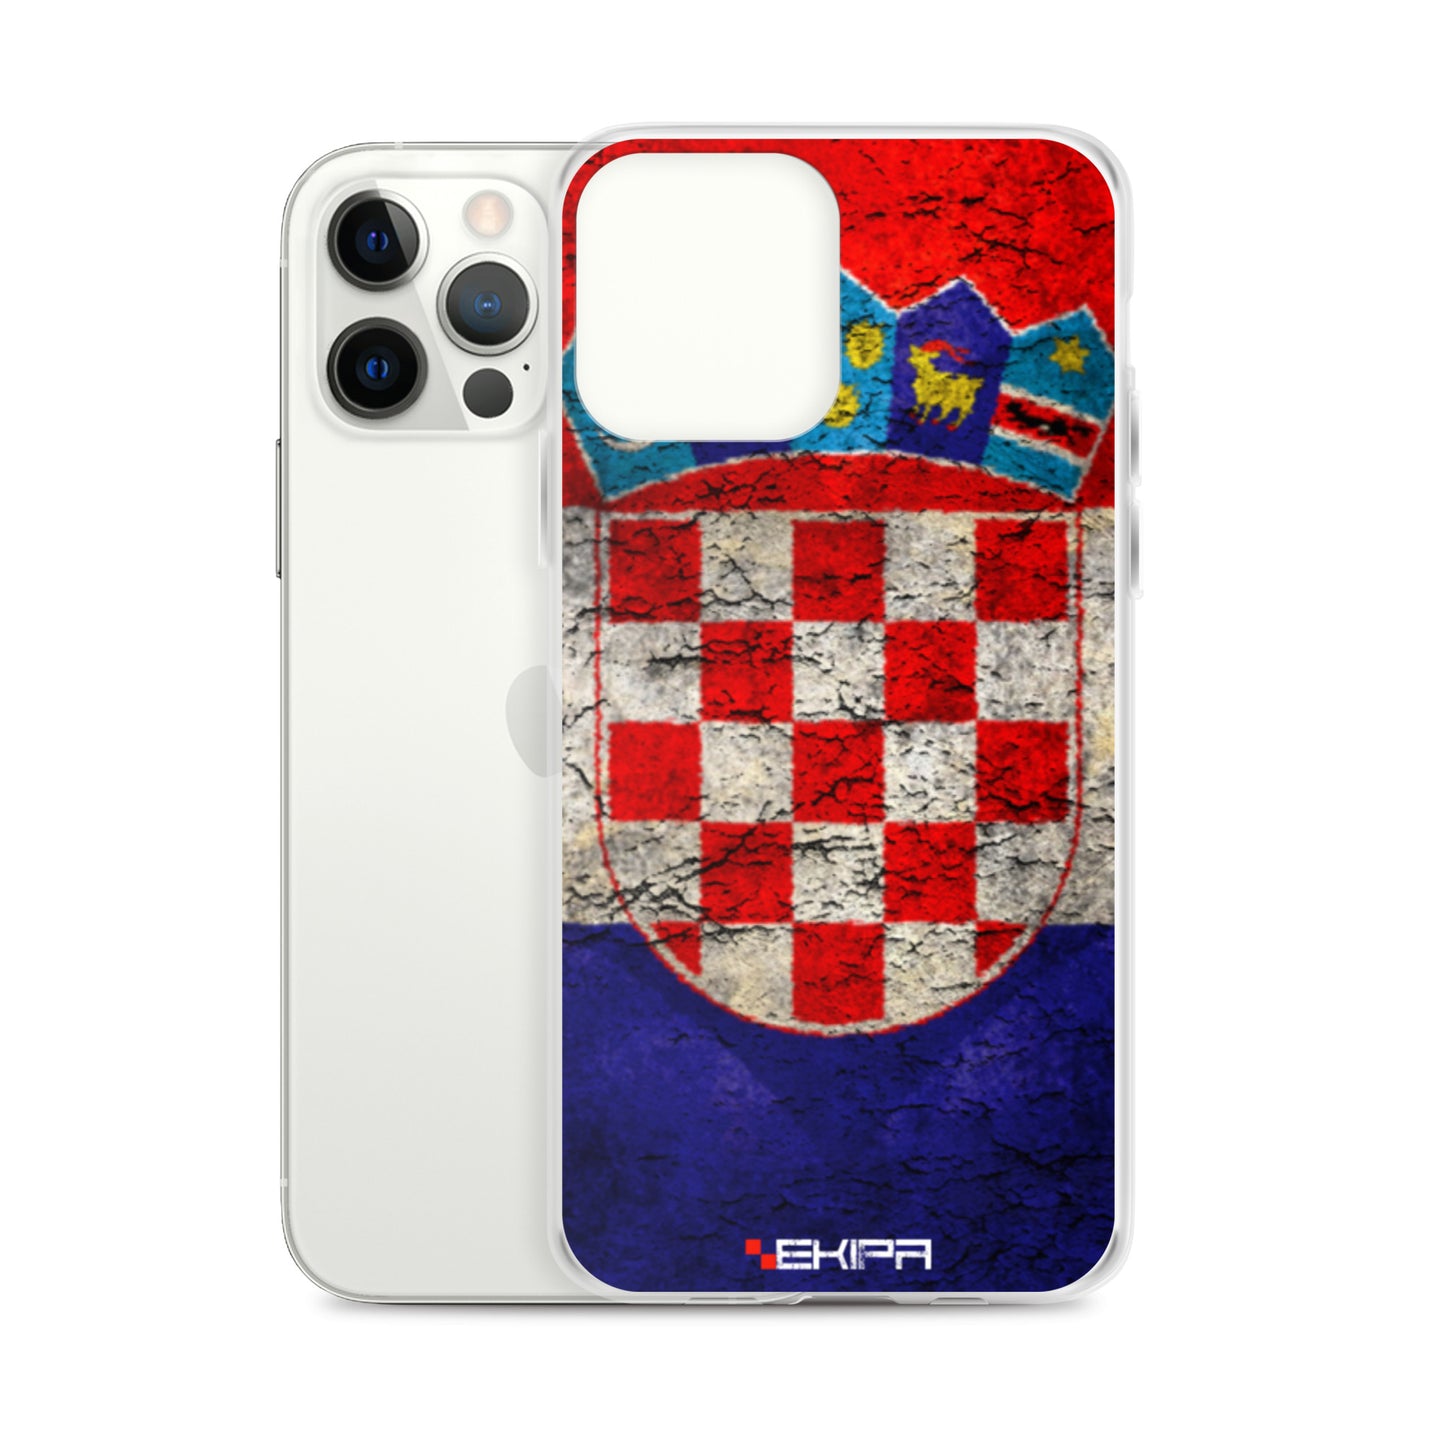 "Croatia" - iPhone case